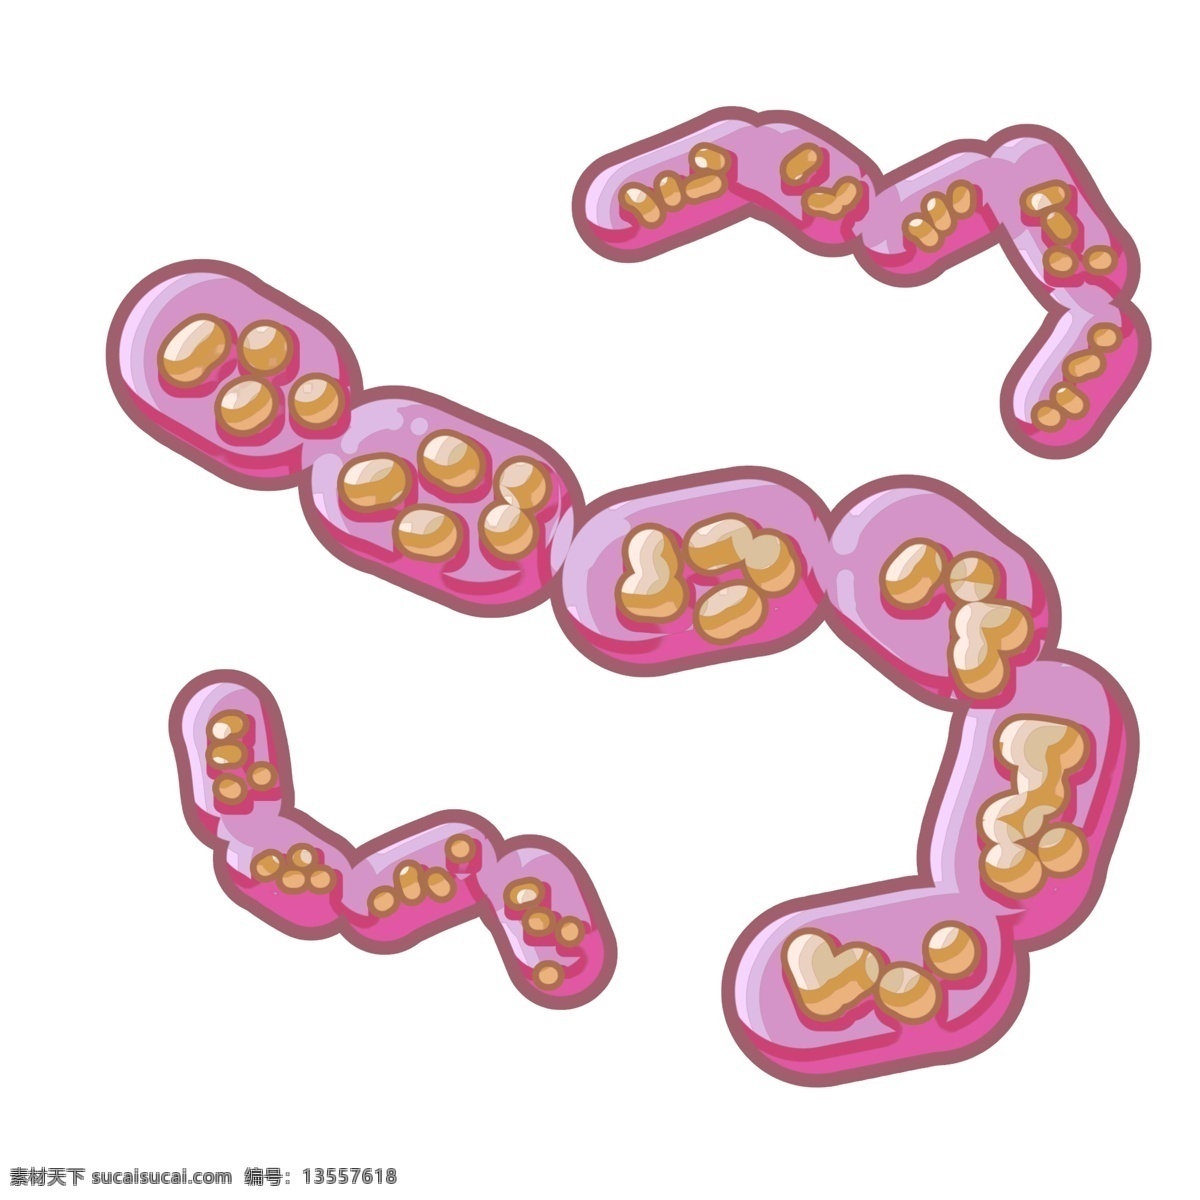 病毒 细菌 细胞体 插画 病毒细菌 医学 卡通 感染 生物 病体 病理插画 病菌 细胞细菌